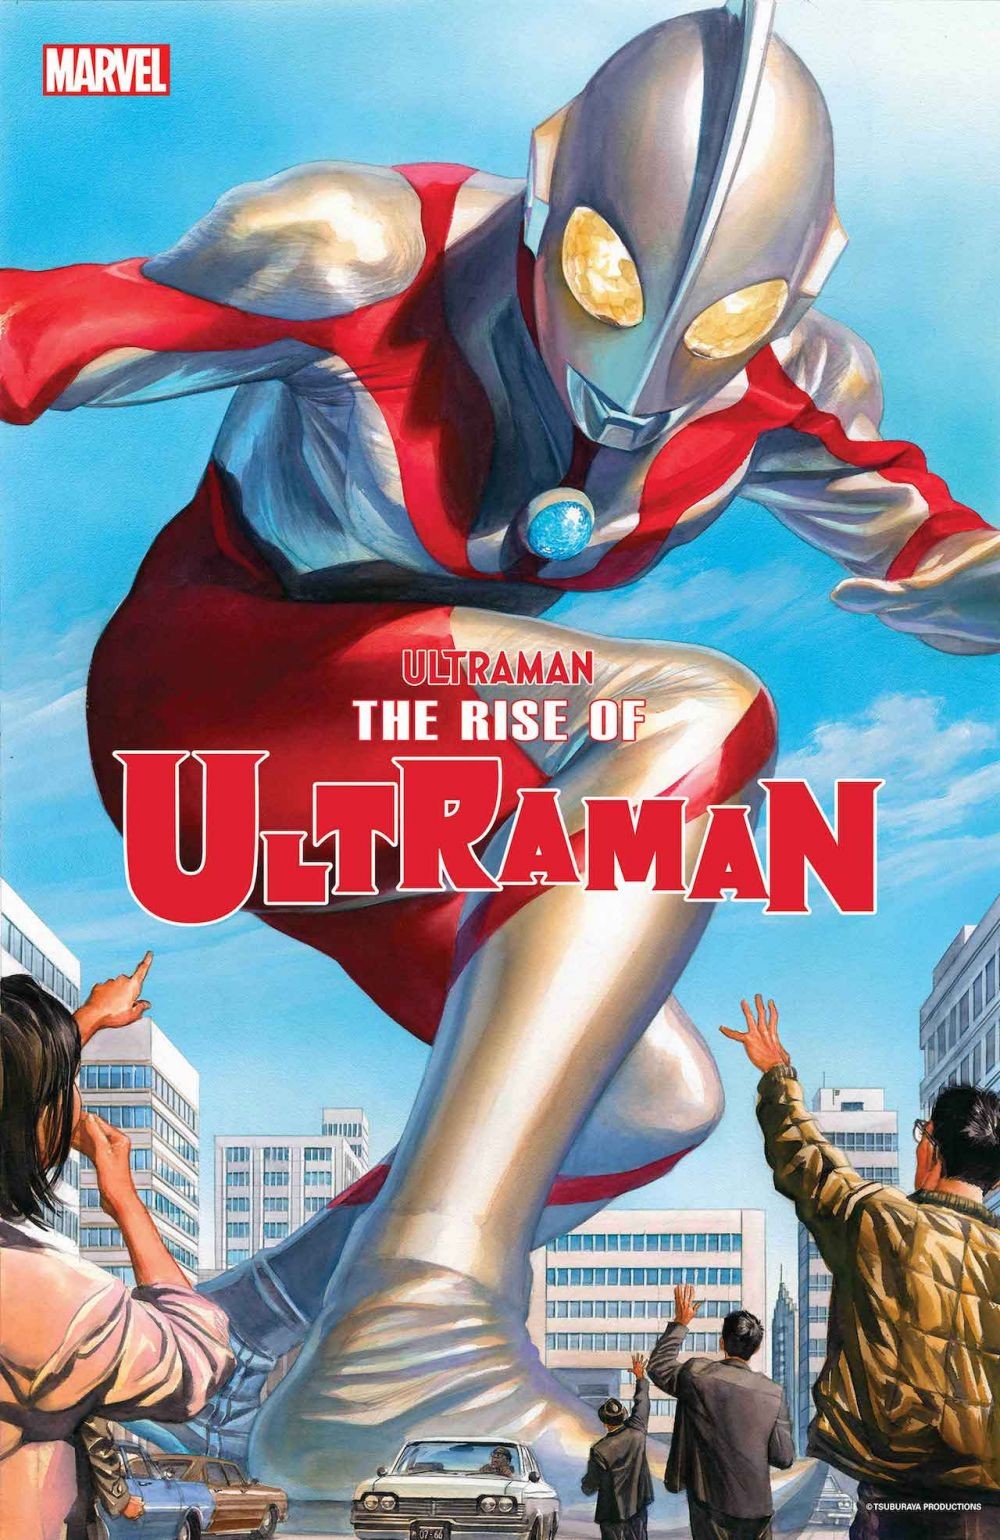 Bulan Rilis Dan Ilustrasi Baru Komik Ultraman Marvel Diumumkan